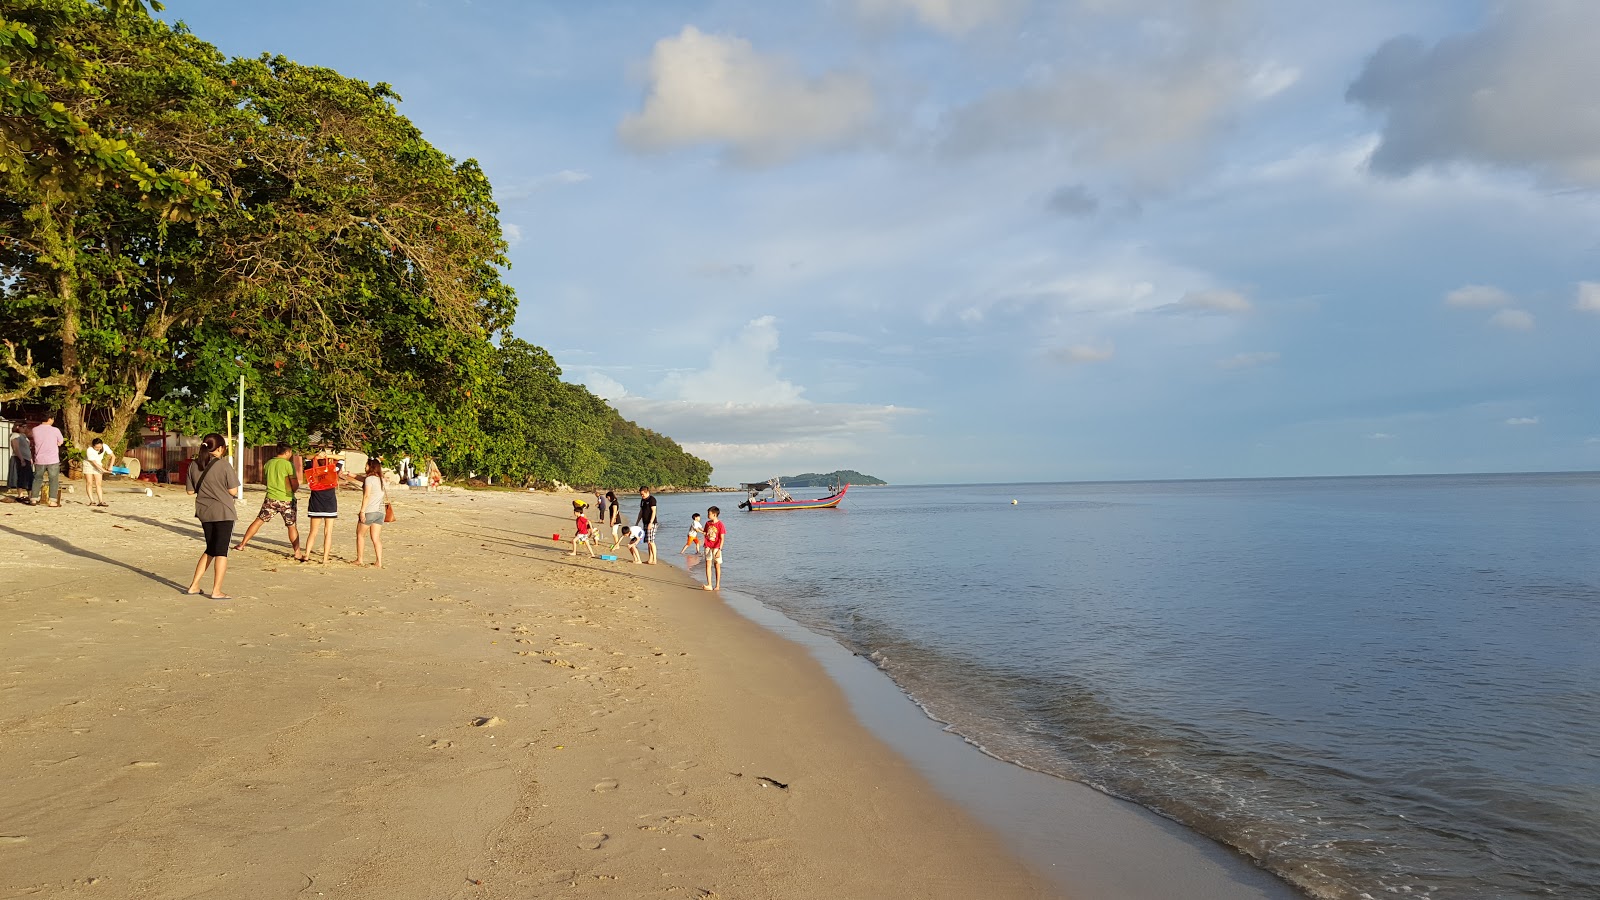 Foto di Ombak Damai Beach - luogo popolare tra gli intenditori del relax